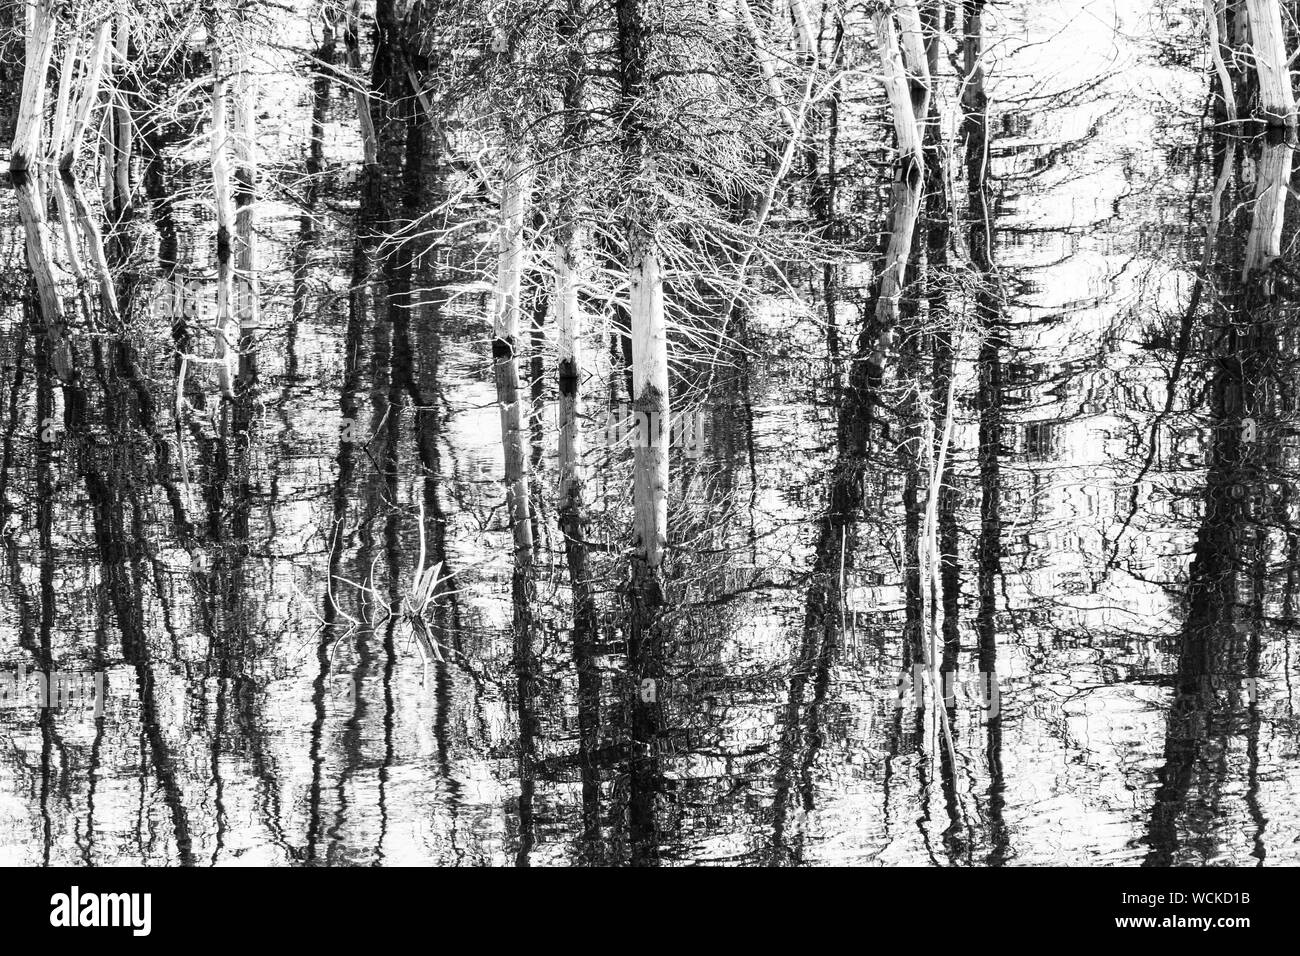 Arte immagine di albero morto monconi riflessa e mostrato in bianco e nero. Foto Stock